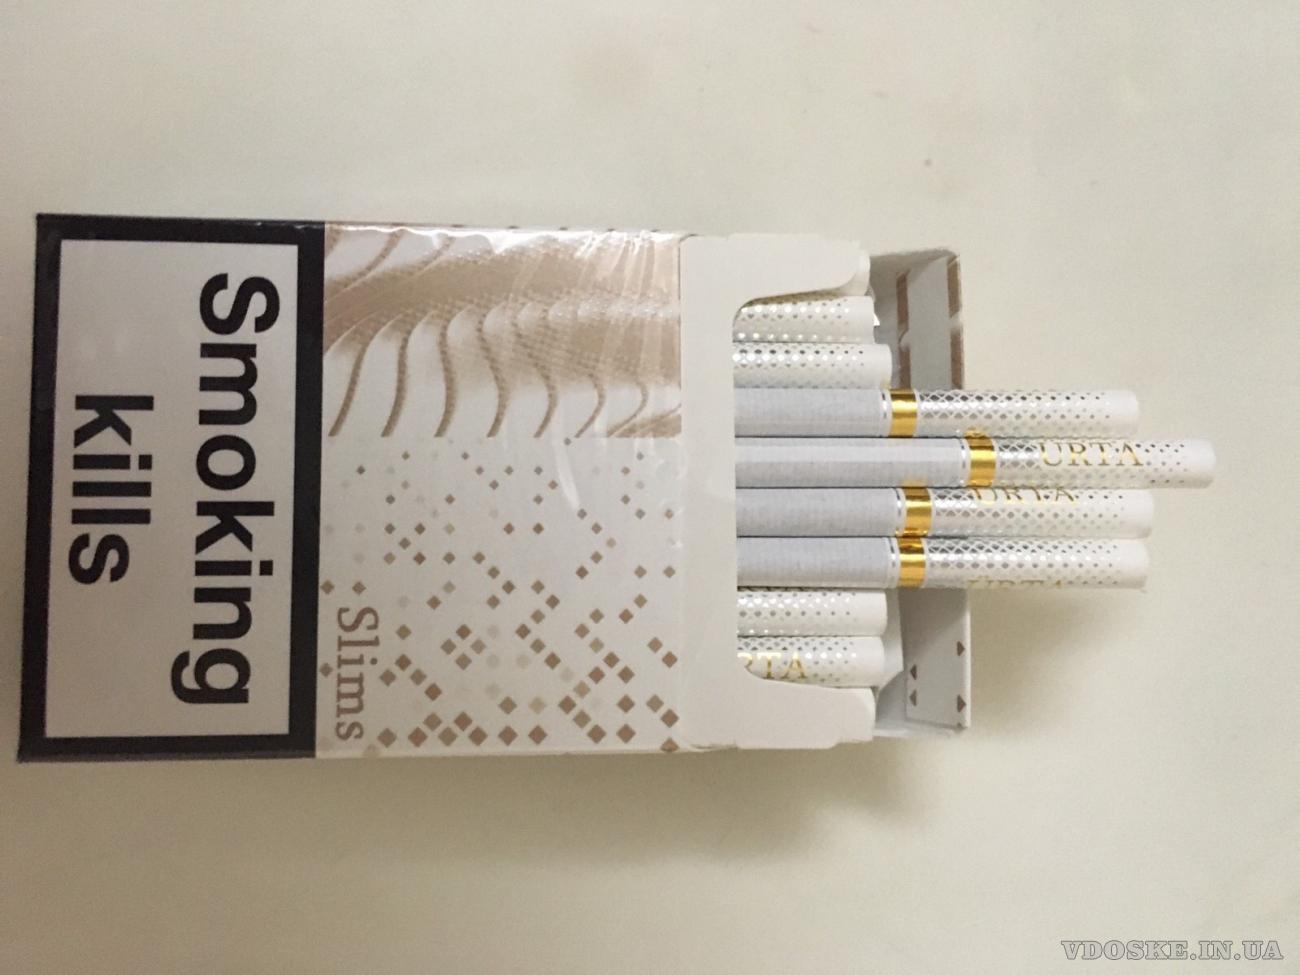 Продам поблочно от-5 блоков сигареты и табачные стики HEETS и FEET (4)